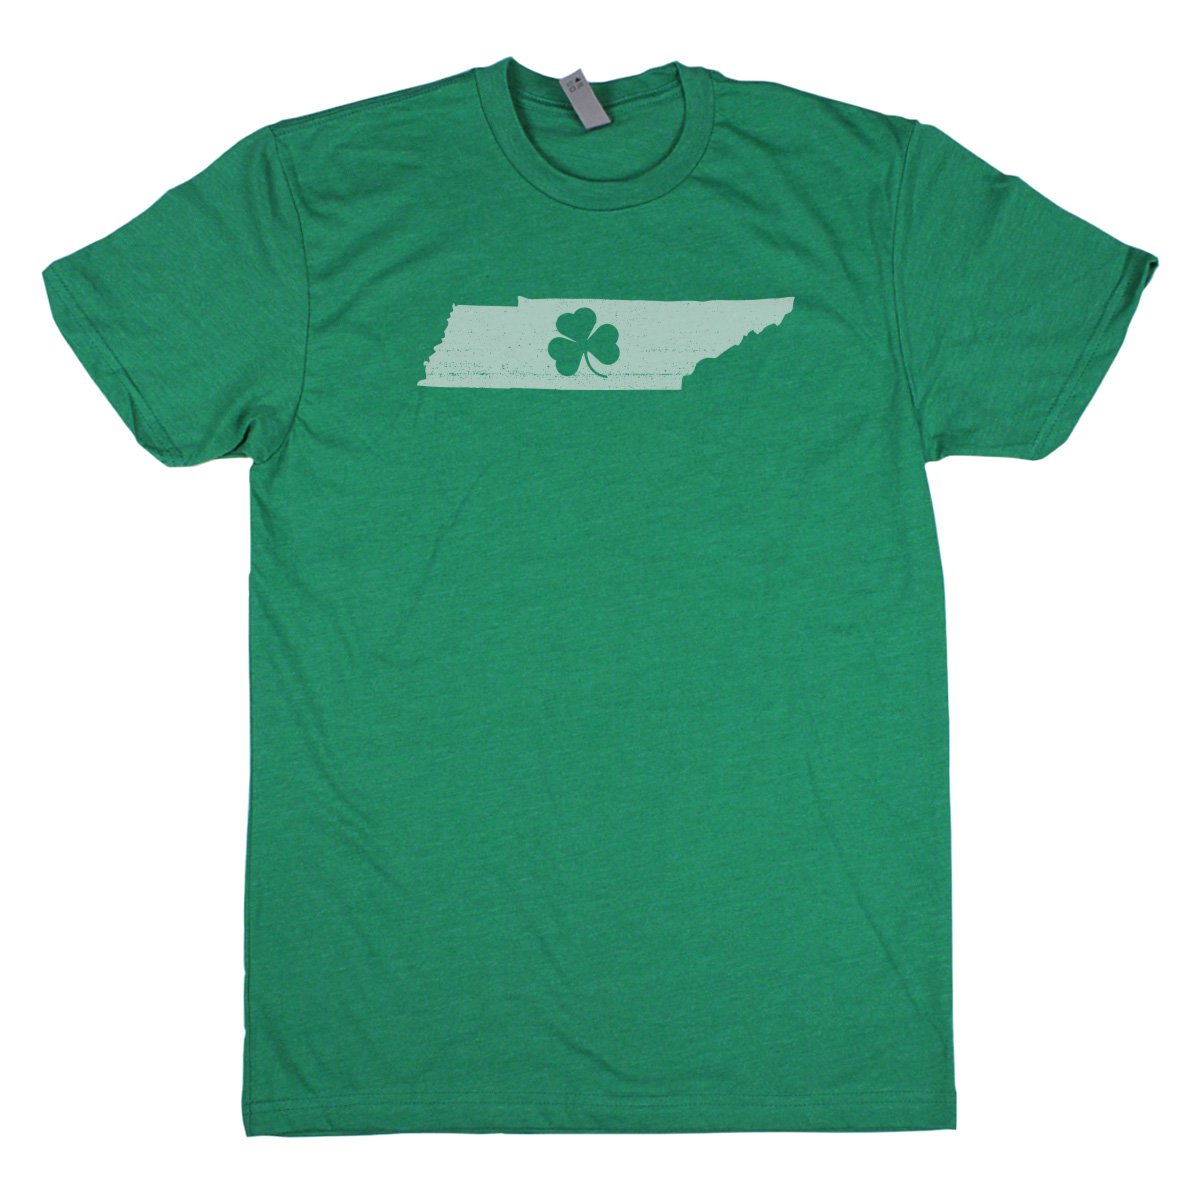 Shamrock Men's Unisex T-Shirt - Rhode Island